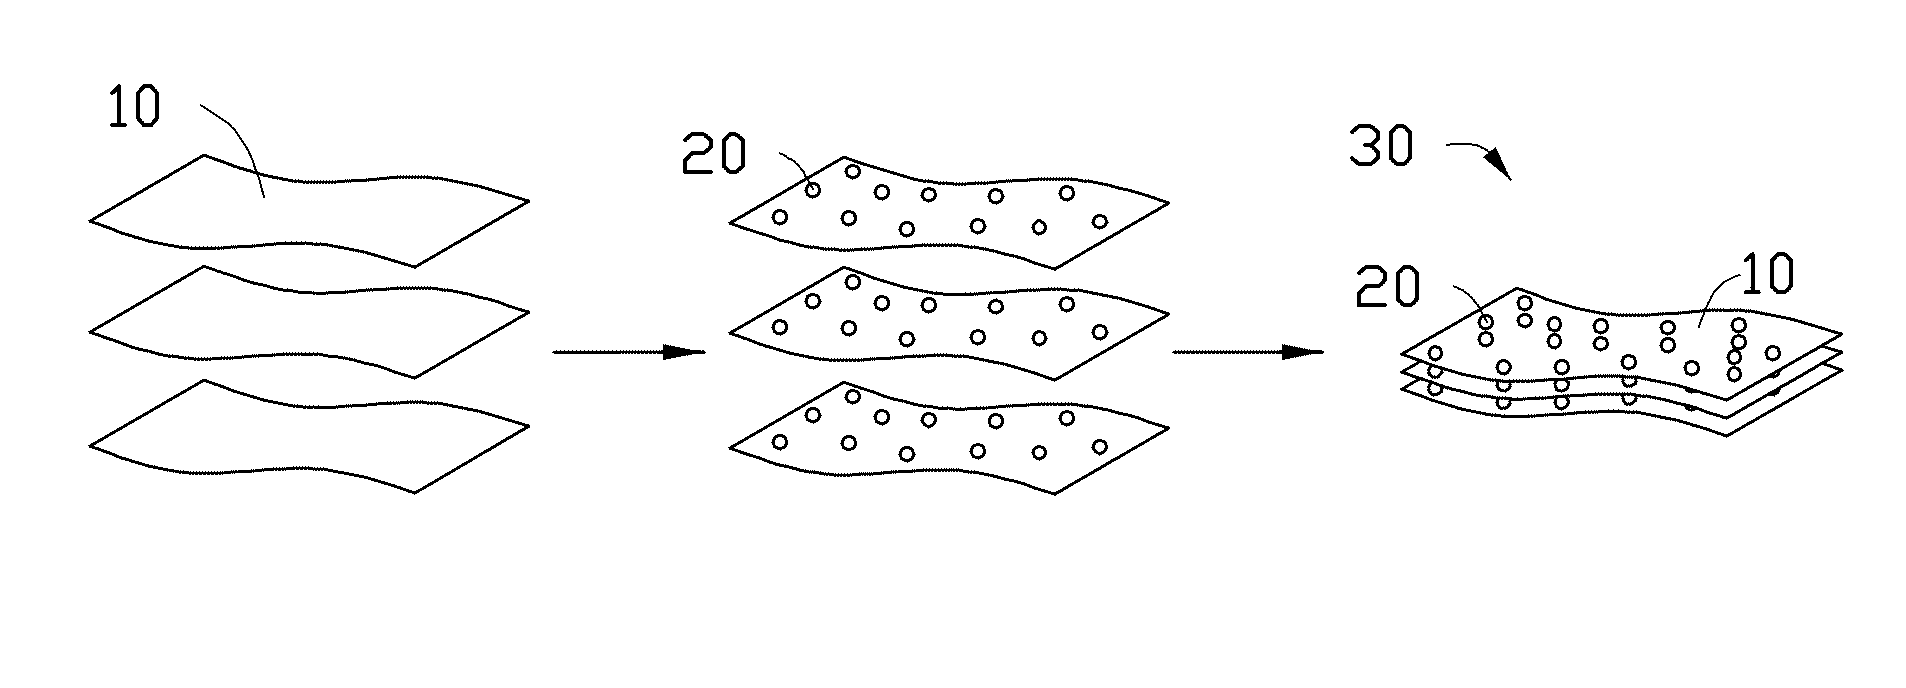 Method for making sulfur-graphene composite material